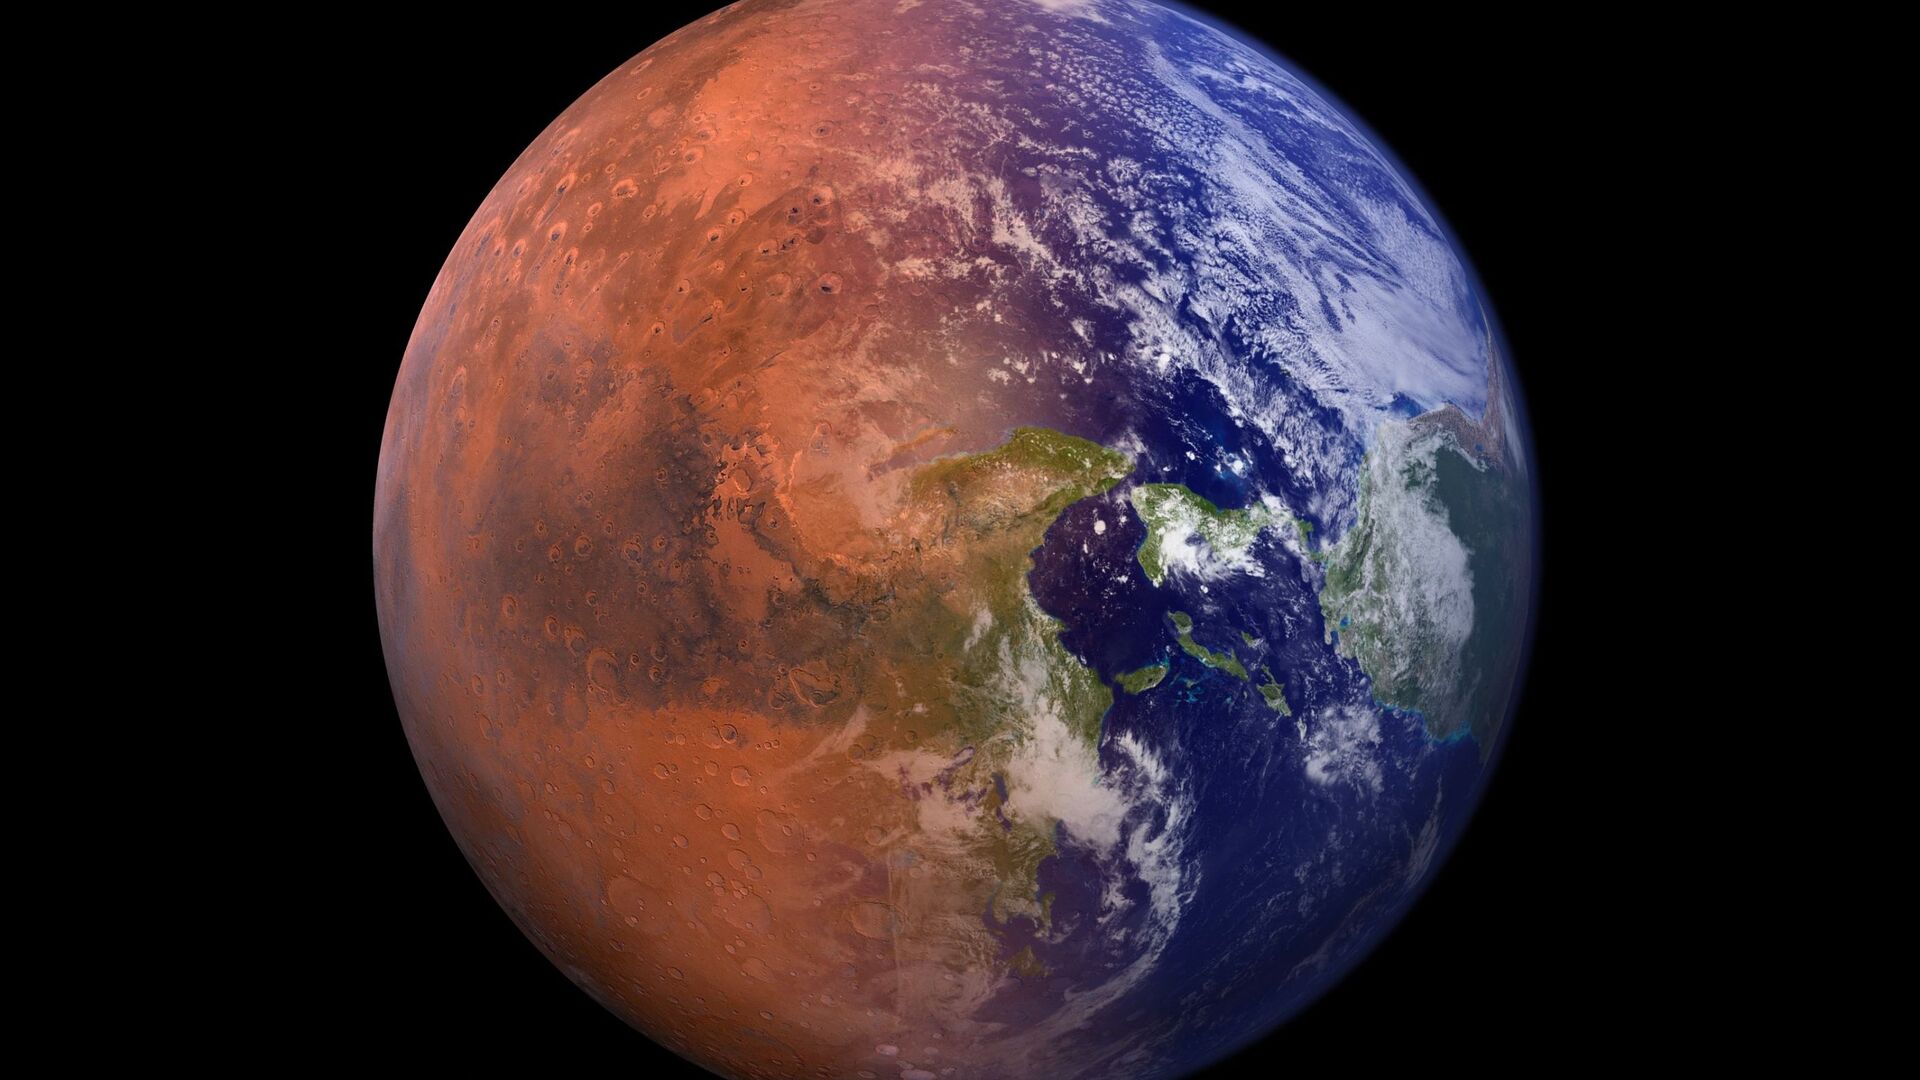 صورة خيالية تجمع كوكب الأرض مع نصف من كوكب المريخ  - سبوتنيك عربي, 1920, 28.12.2021